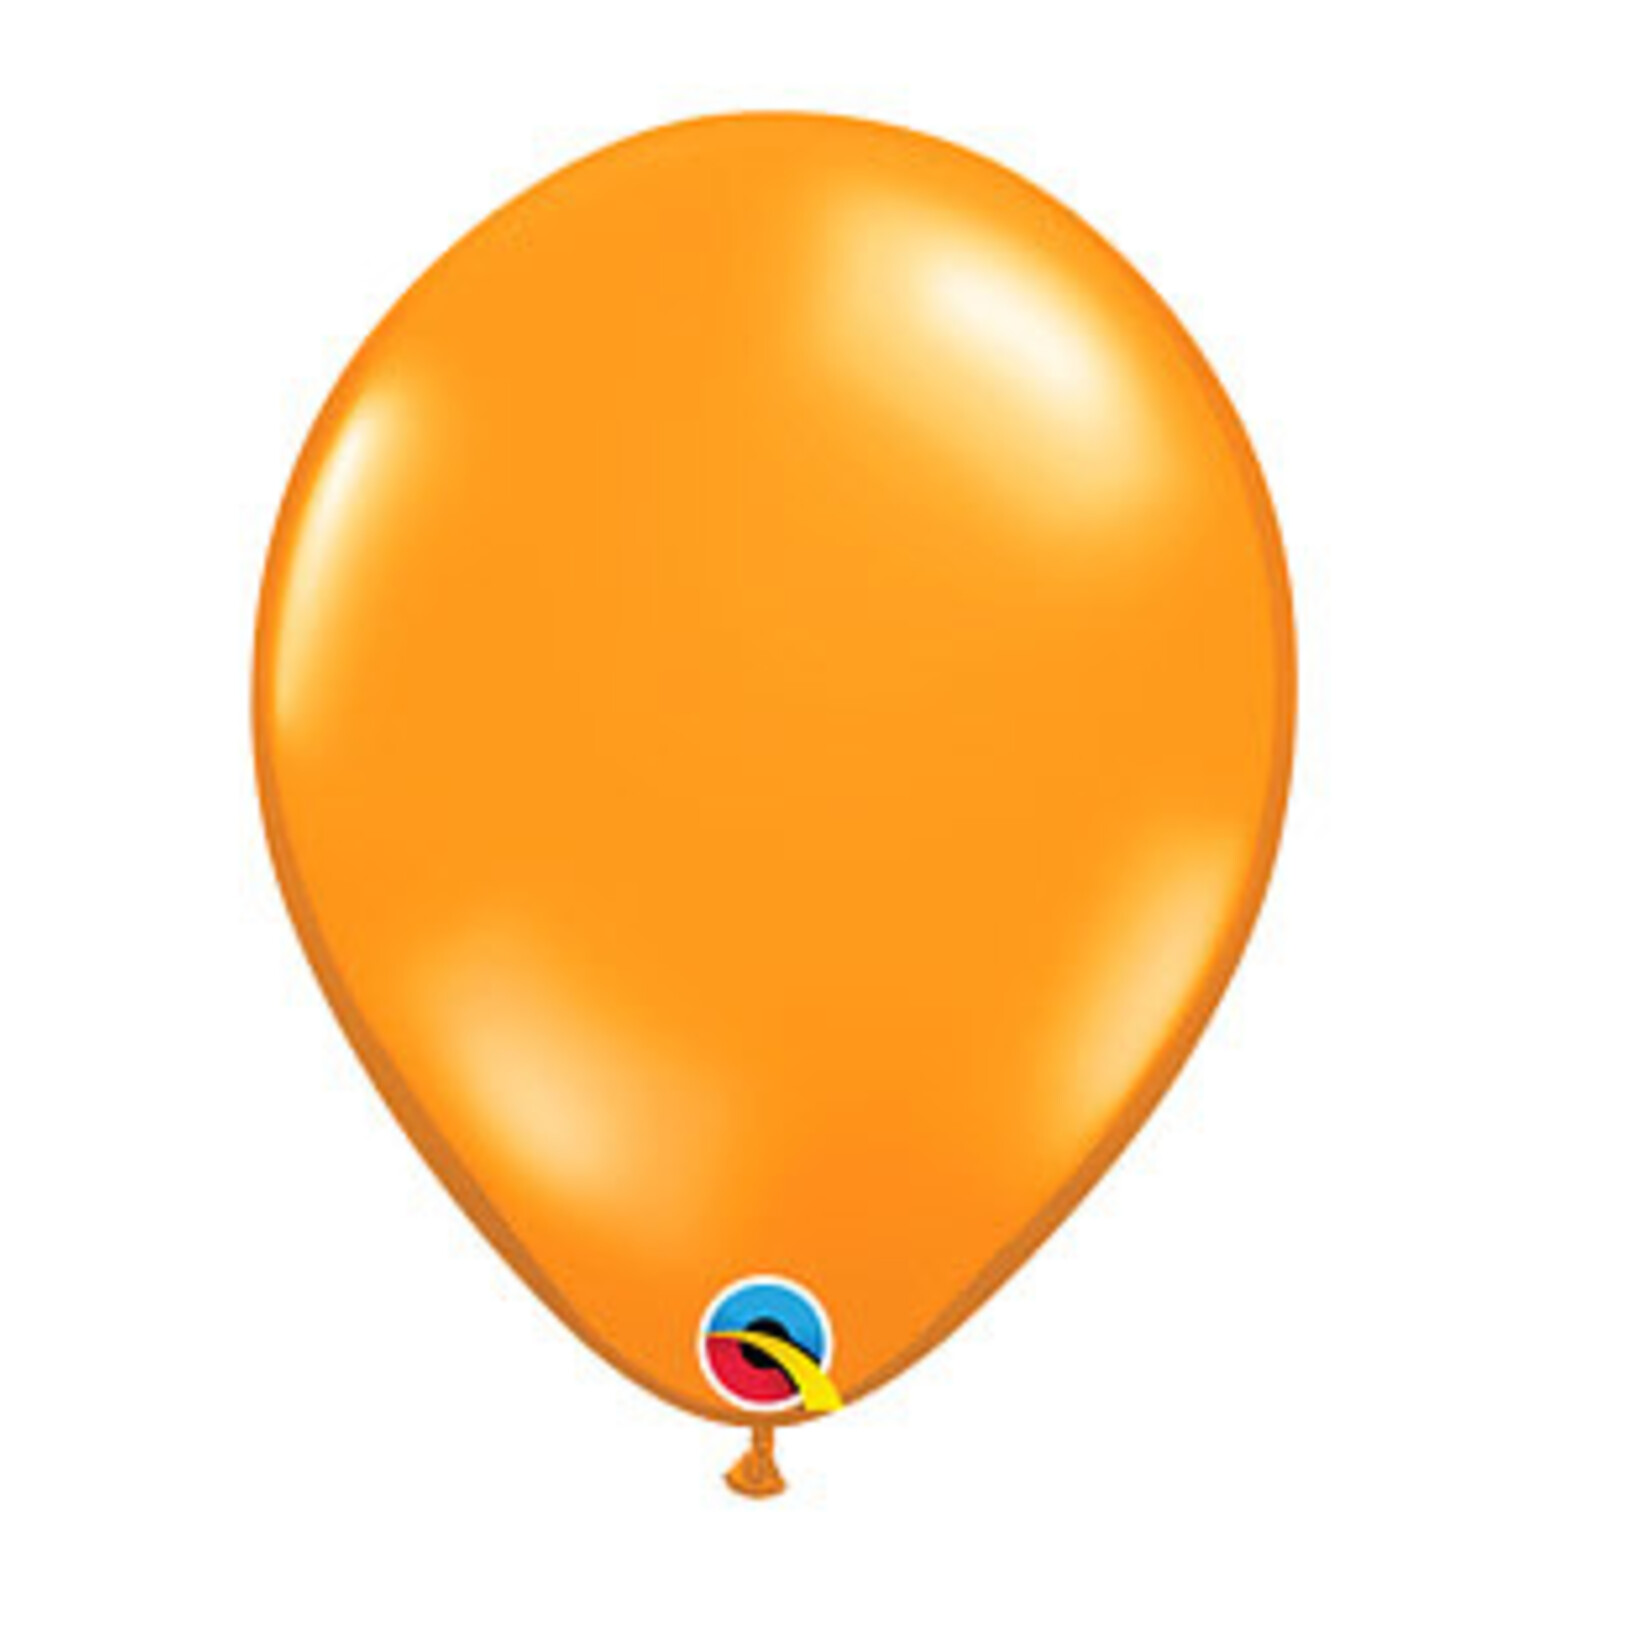 Burton + Burton 11" Orange Qualatex Latex Balloons - 100ct.